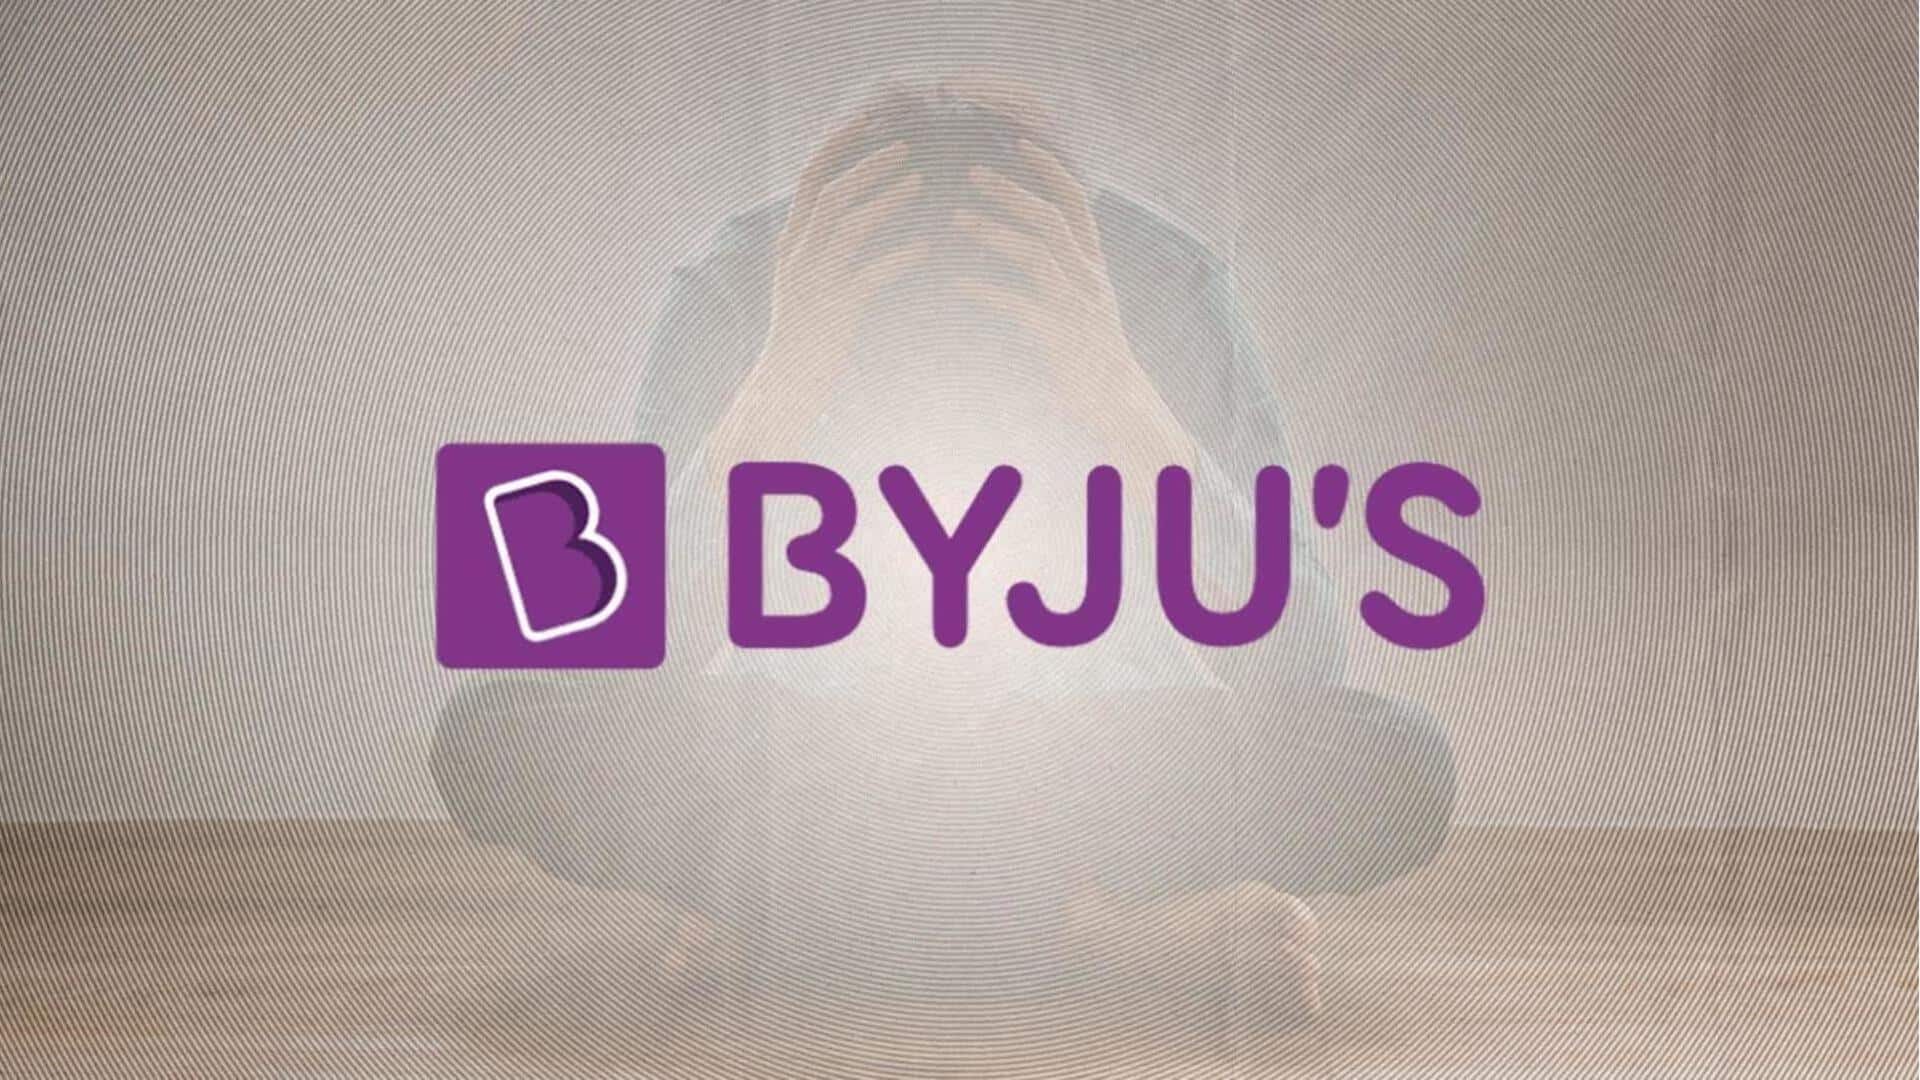 BYJU'S ने शुरू की छंटनी, फोन कॉल पर की जा रही कर्मचारियों की छुट्टी